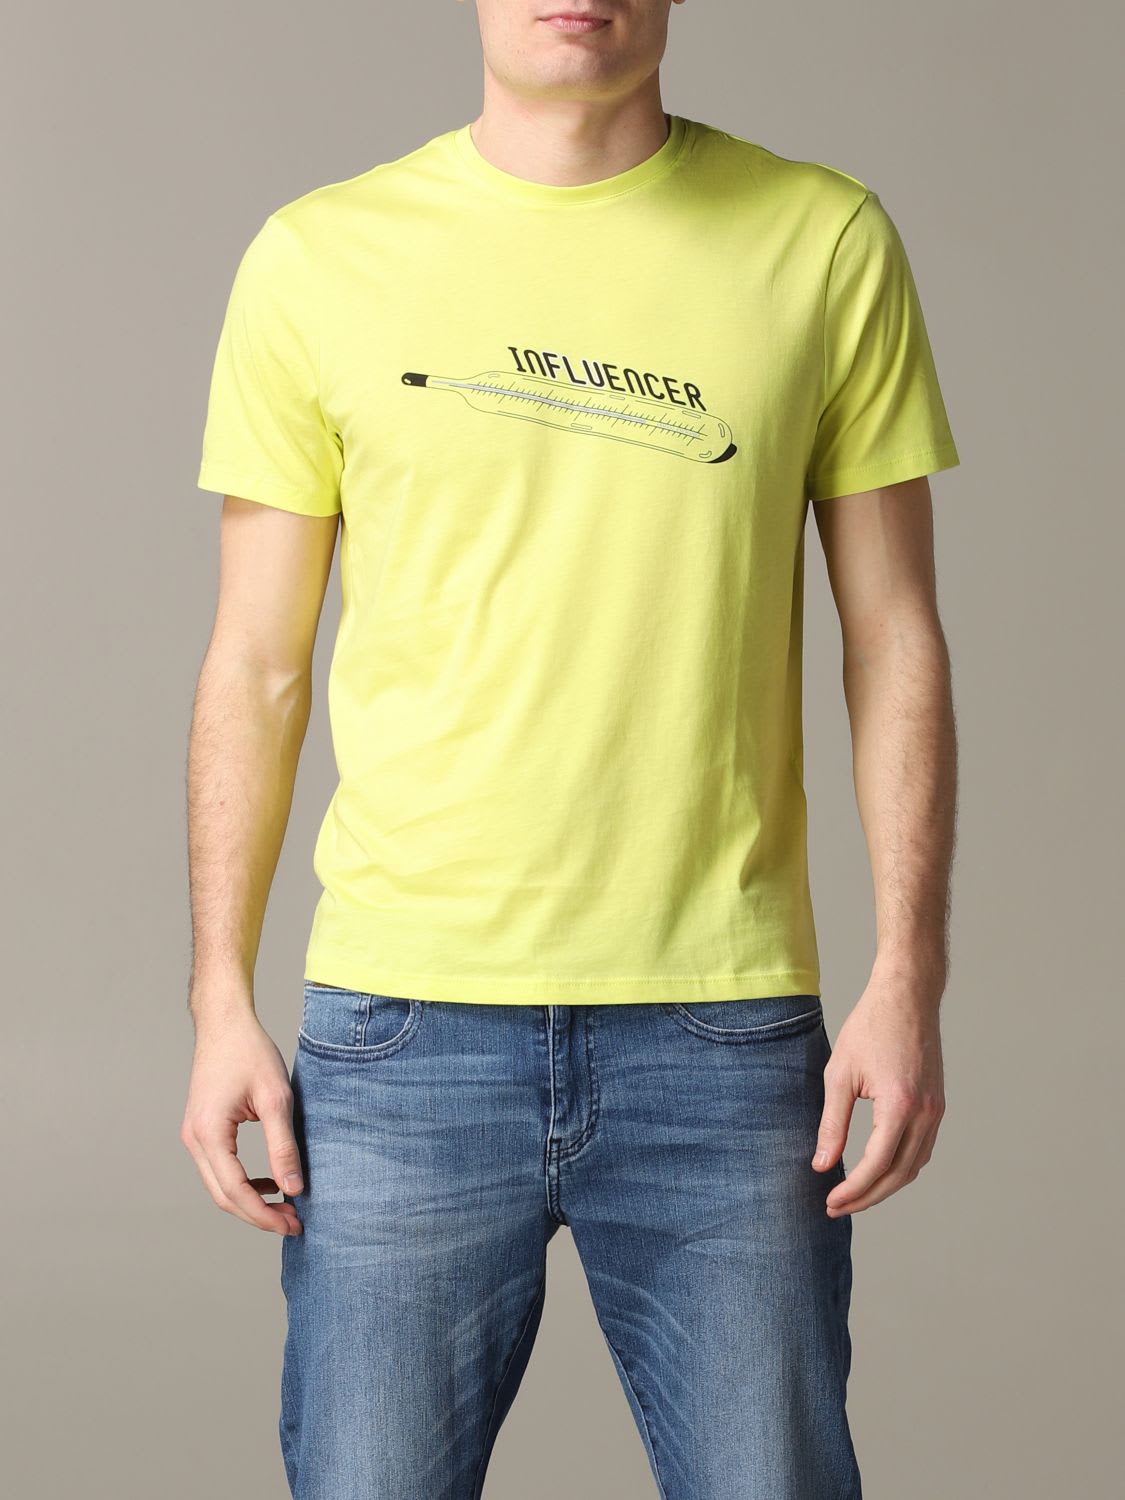 yellow armani t shirt